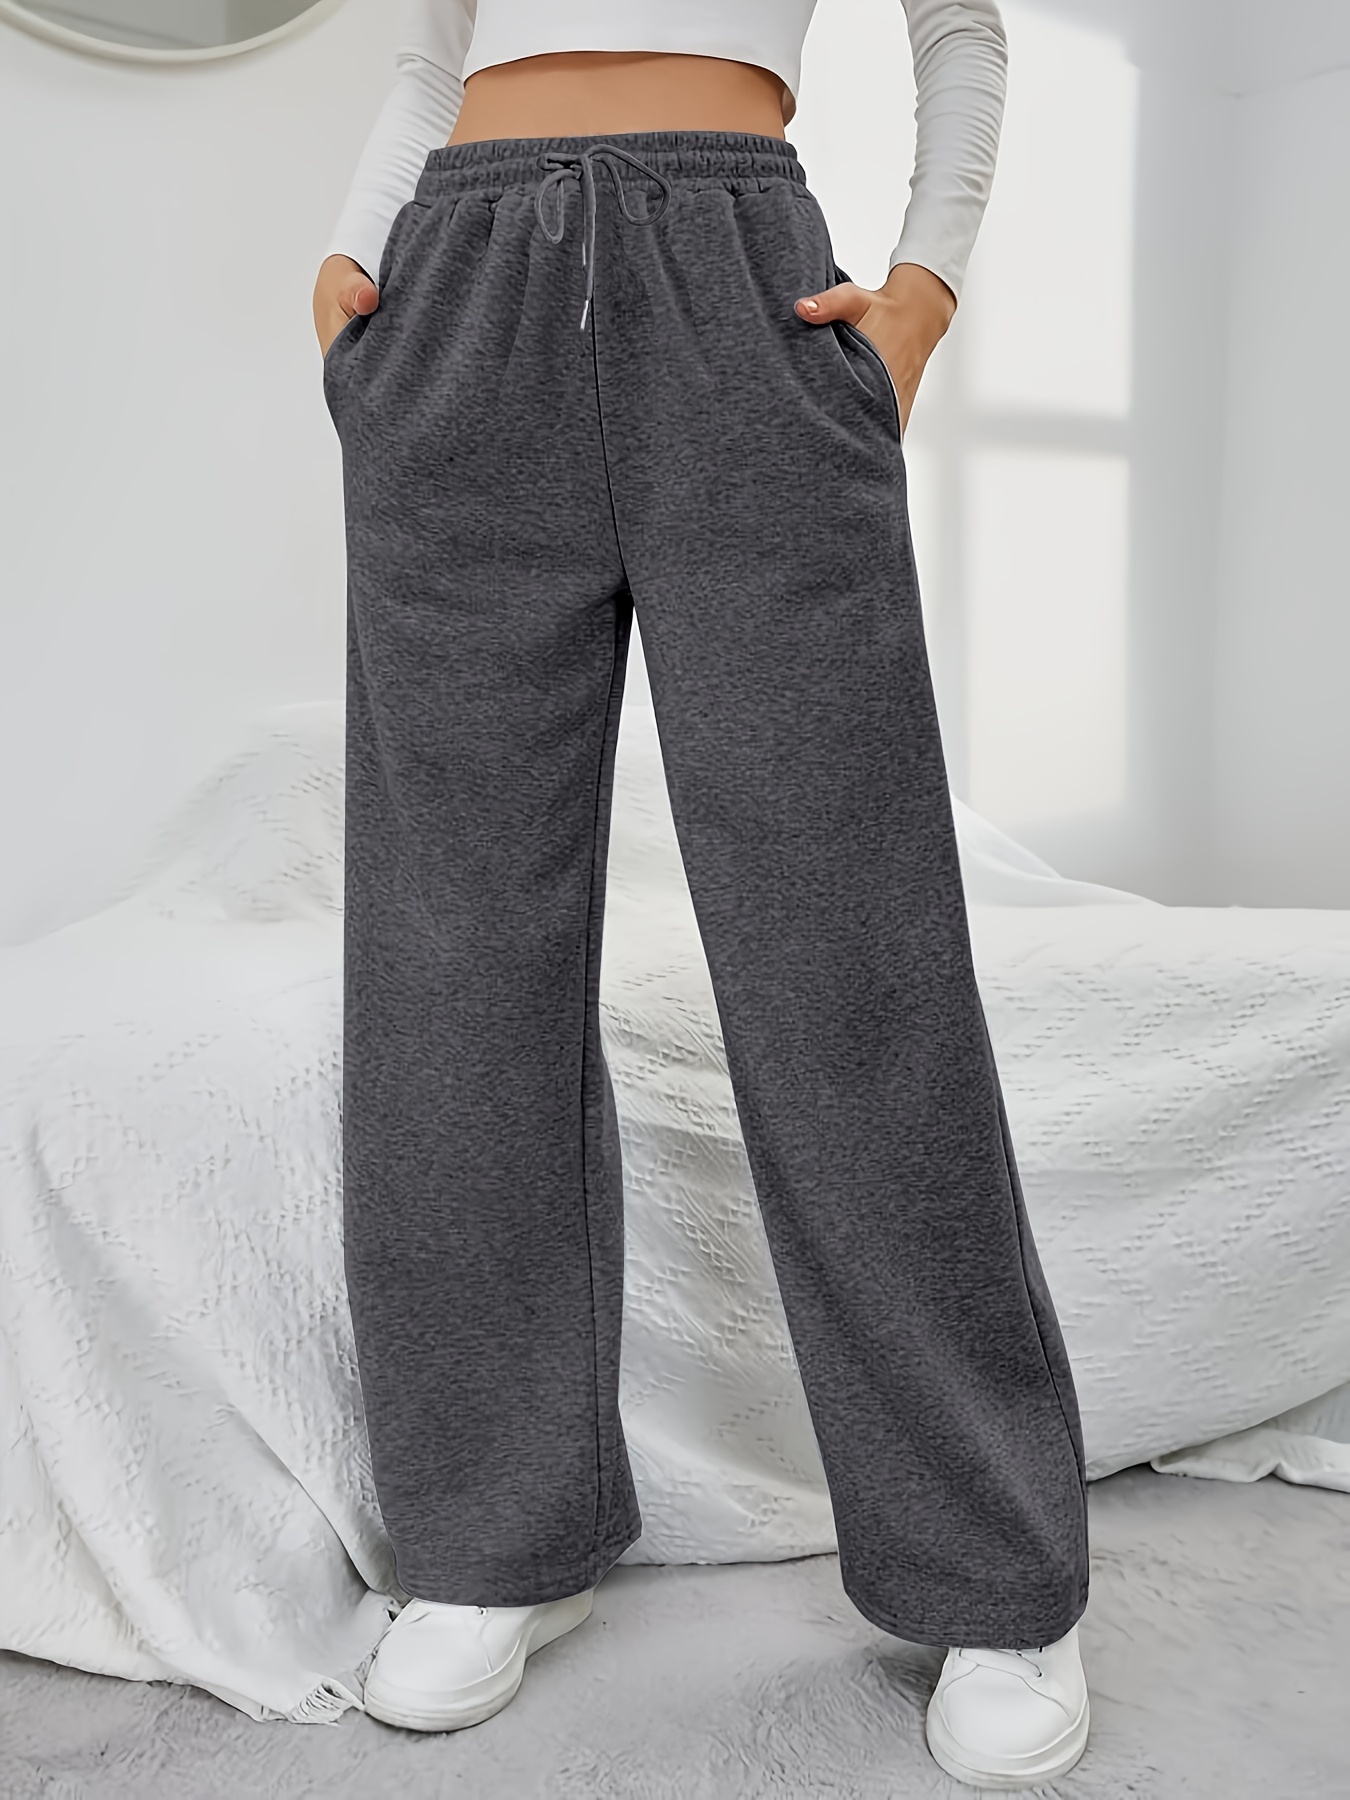 Pantalones deportivos para mujer, pantalones sueltos de cintura